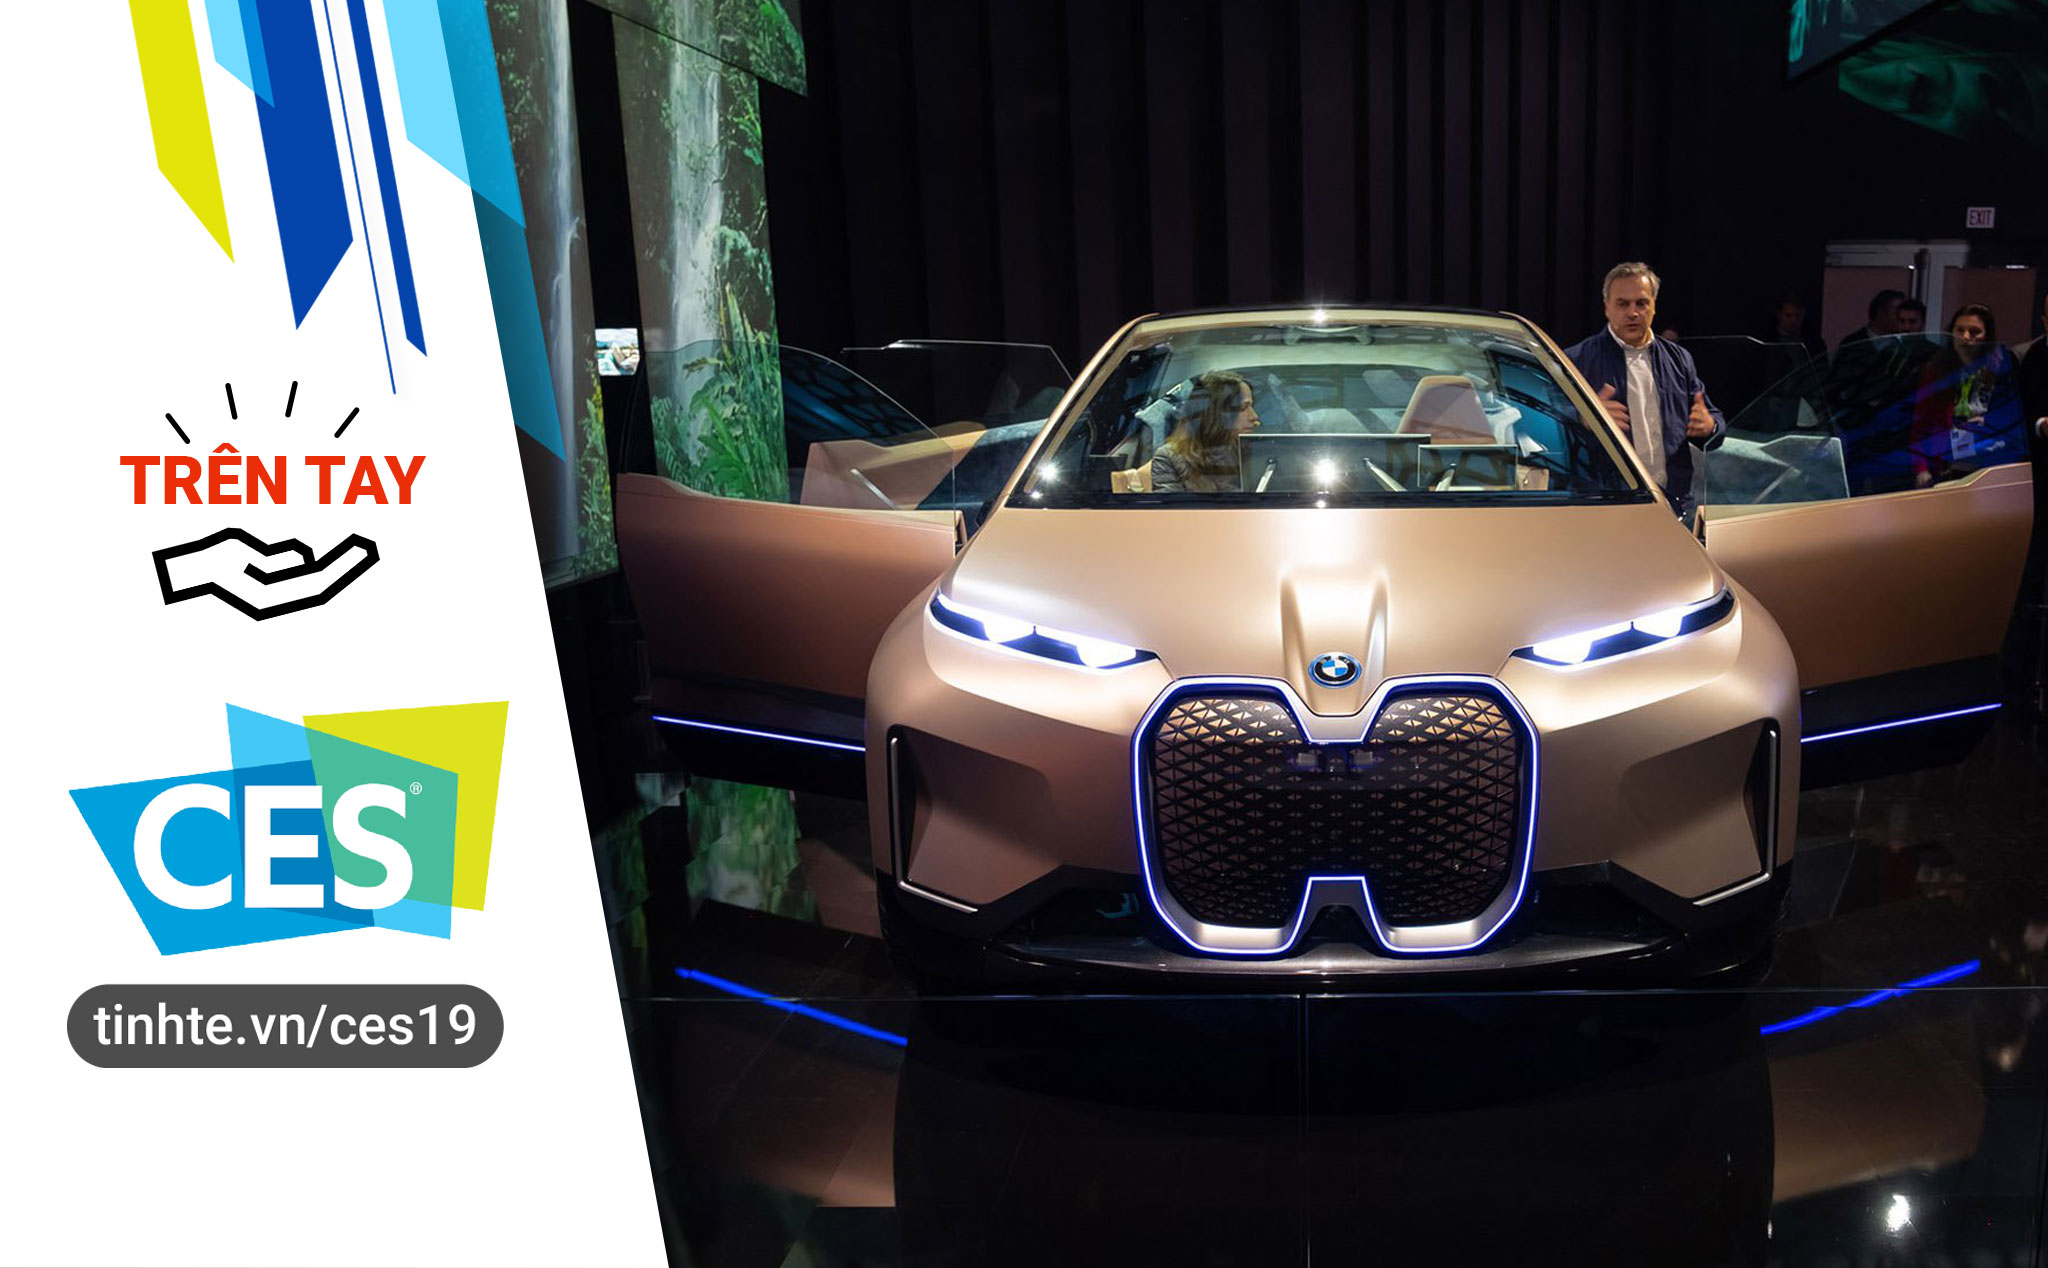 #CES19 "Trên tay" xe concept BMW Vision iNEXT tích hợp gói công nghệ tương tác Shy Tech rất thú vị